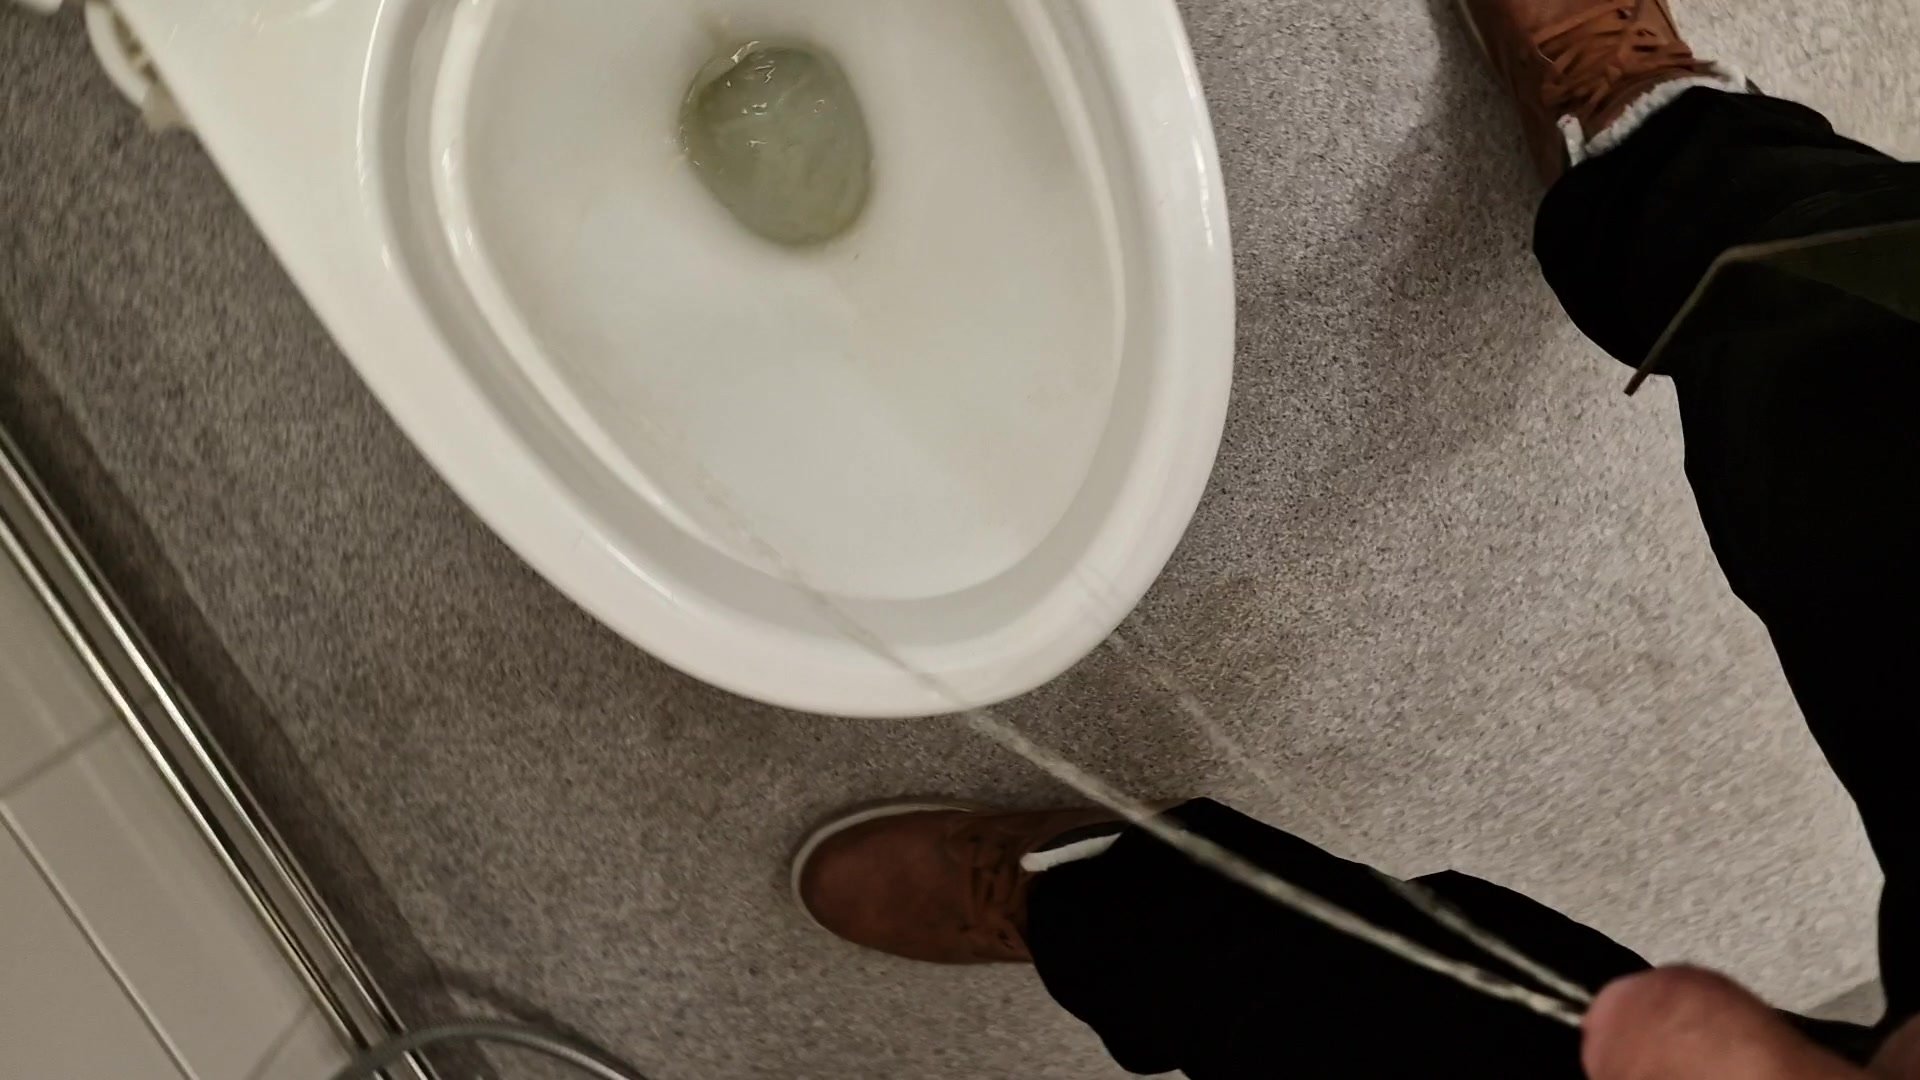 Pissing around in public toilet